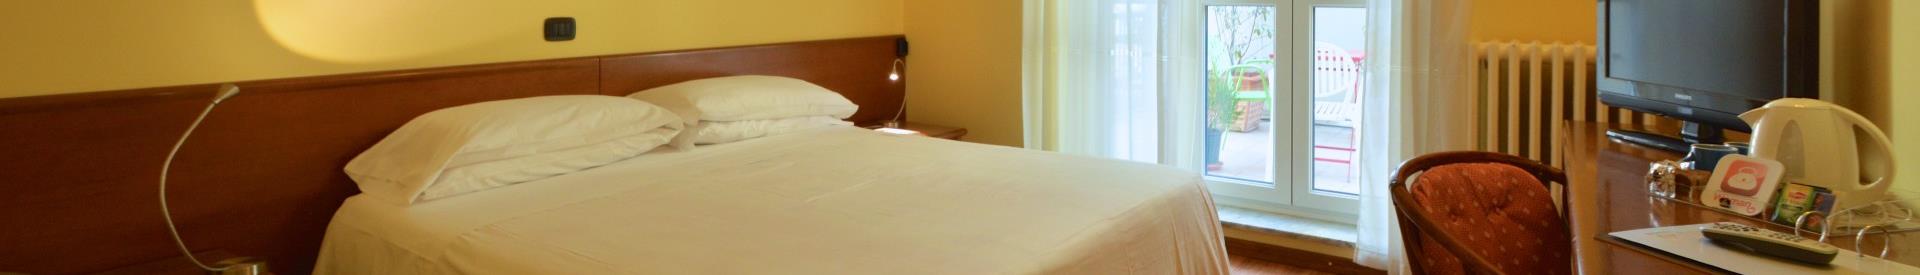 Prenota subito la tua camera nel miglior hotel 3 stelle di Torino